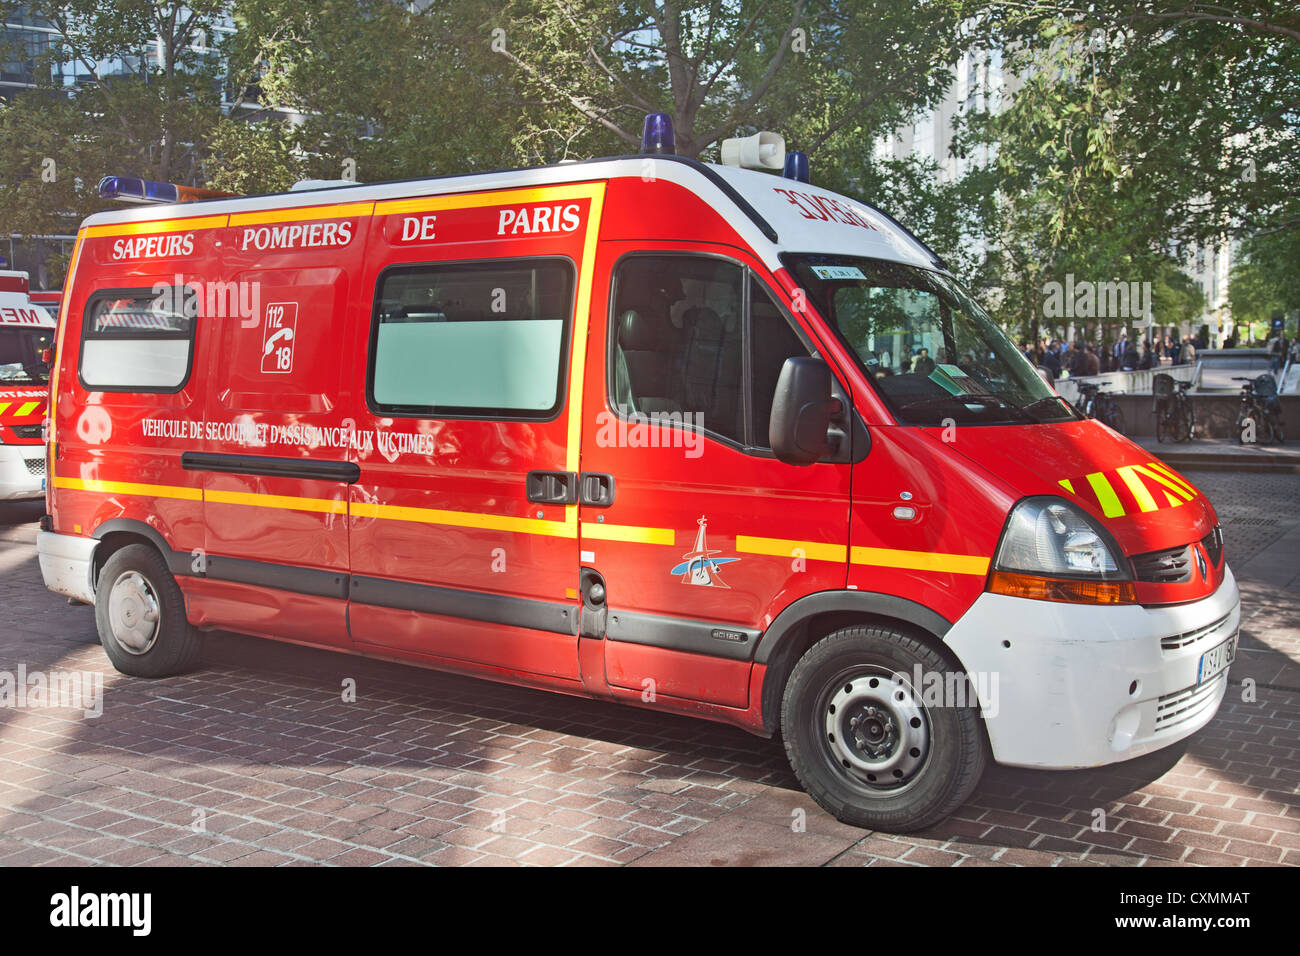 Sapeurs Pompiers de Paris: Vehicule de secours et d'assistance aux victims. Emergency service vehicle Stock Photo